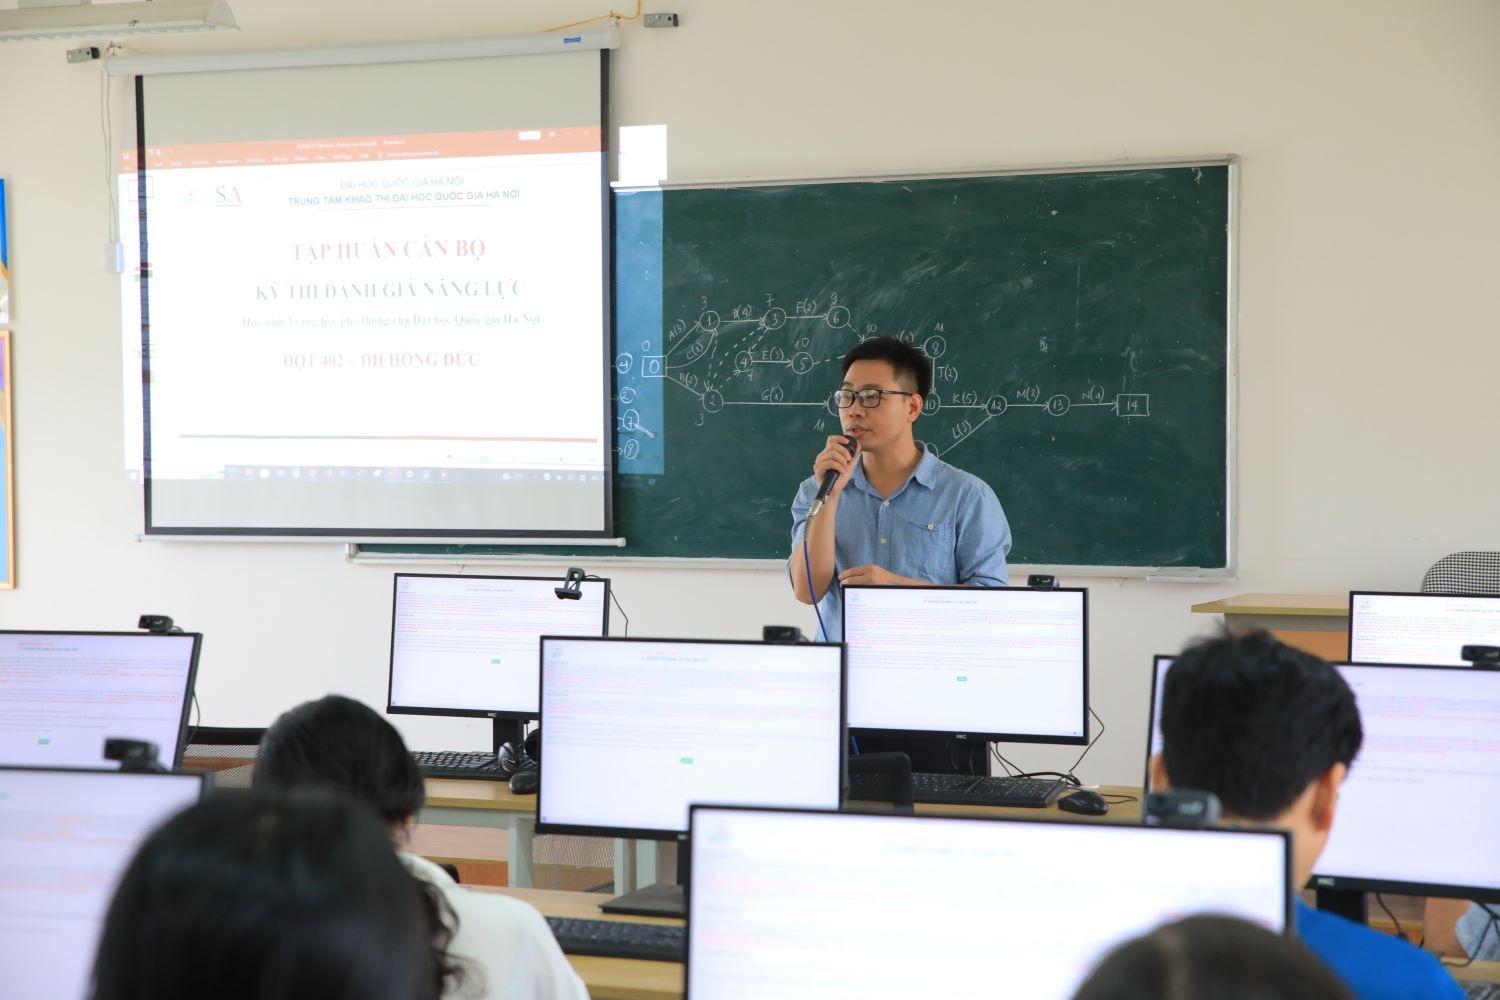 Tập huấn cán bộ làm nhiệm vụ kỳ thi đánh giá năng lực học sinh THPT (HSA) đợt 402 ngày 6 - 7/4/2024 của Đại học Quốc gia, Hà Nội tại Smartedu Hub Thanh Hóa